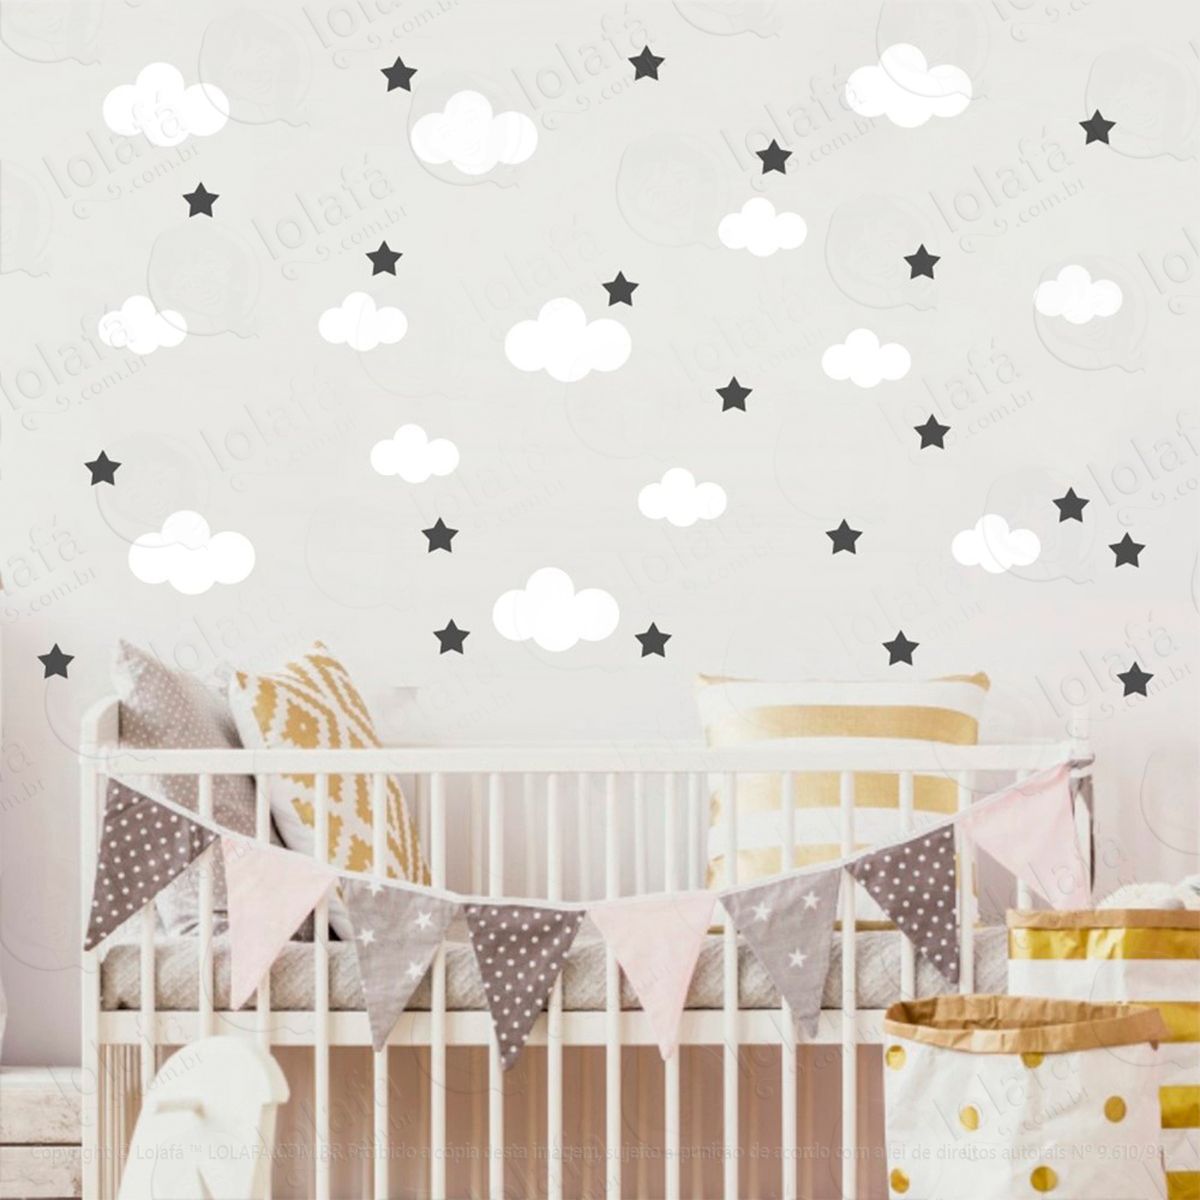 adesivos nuvens e estrelas 104 peças adesivos para quarto de bebê infantil - mod:823